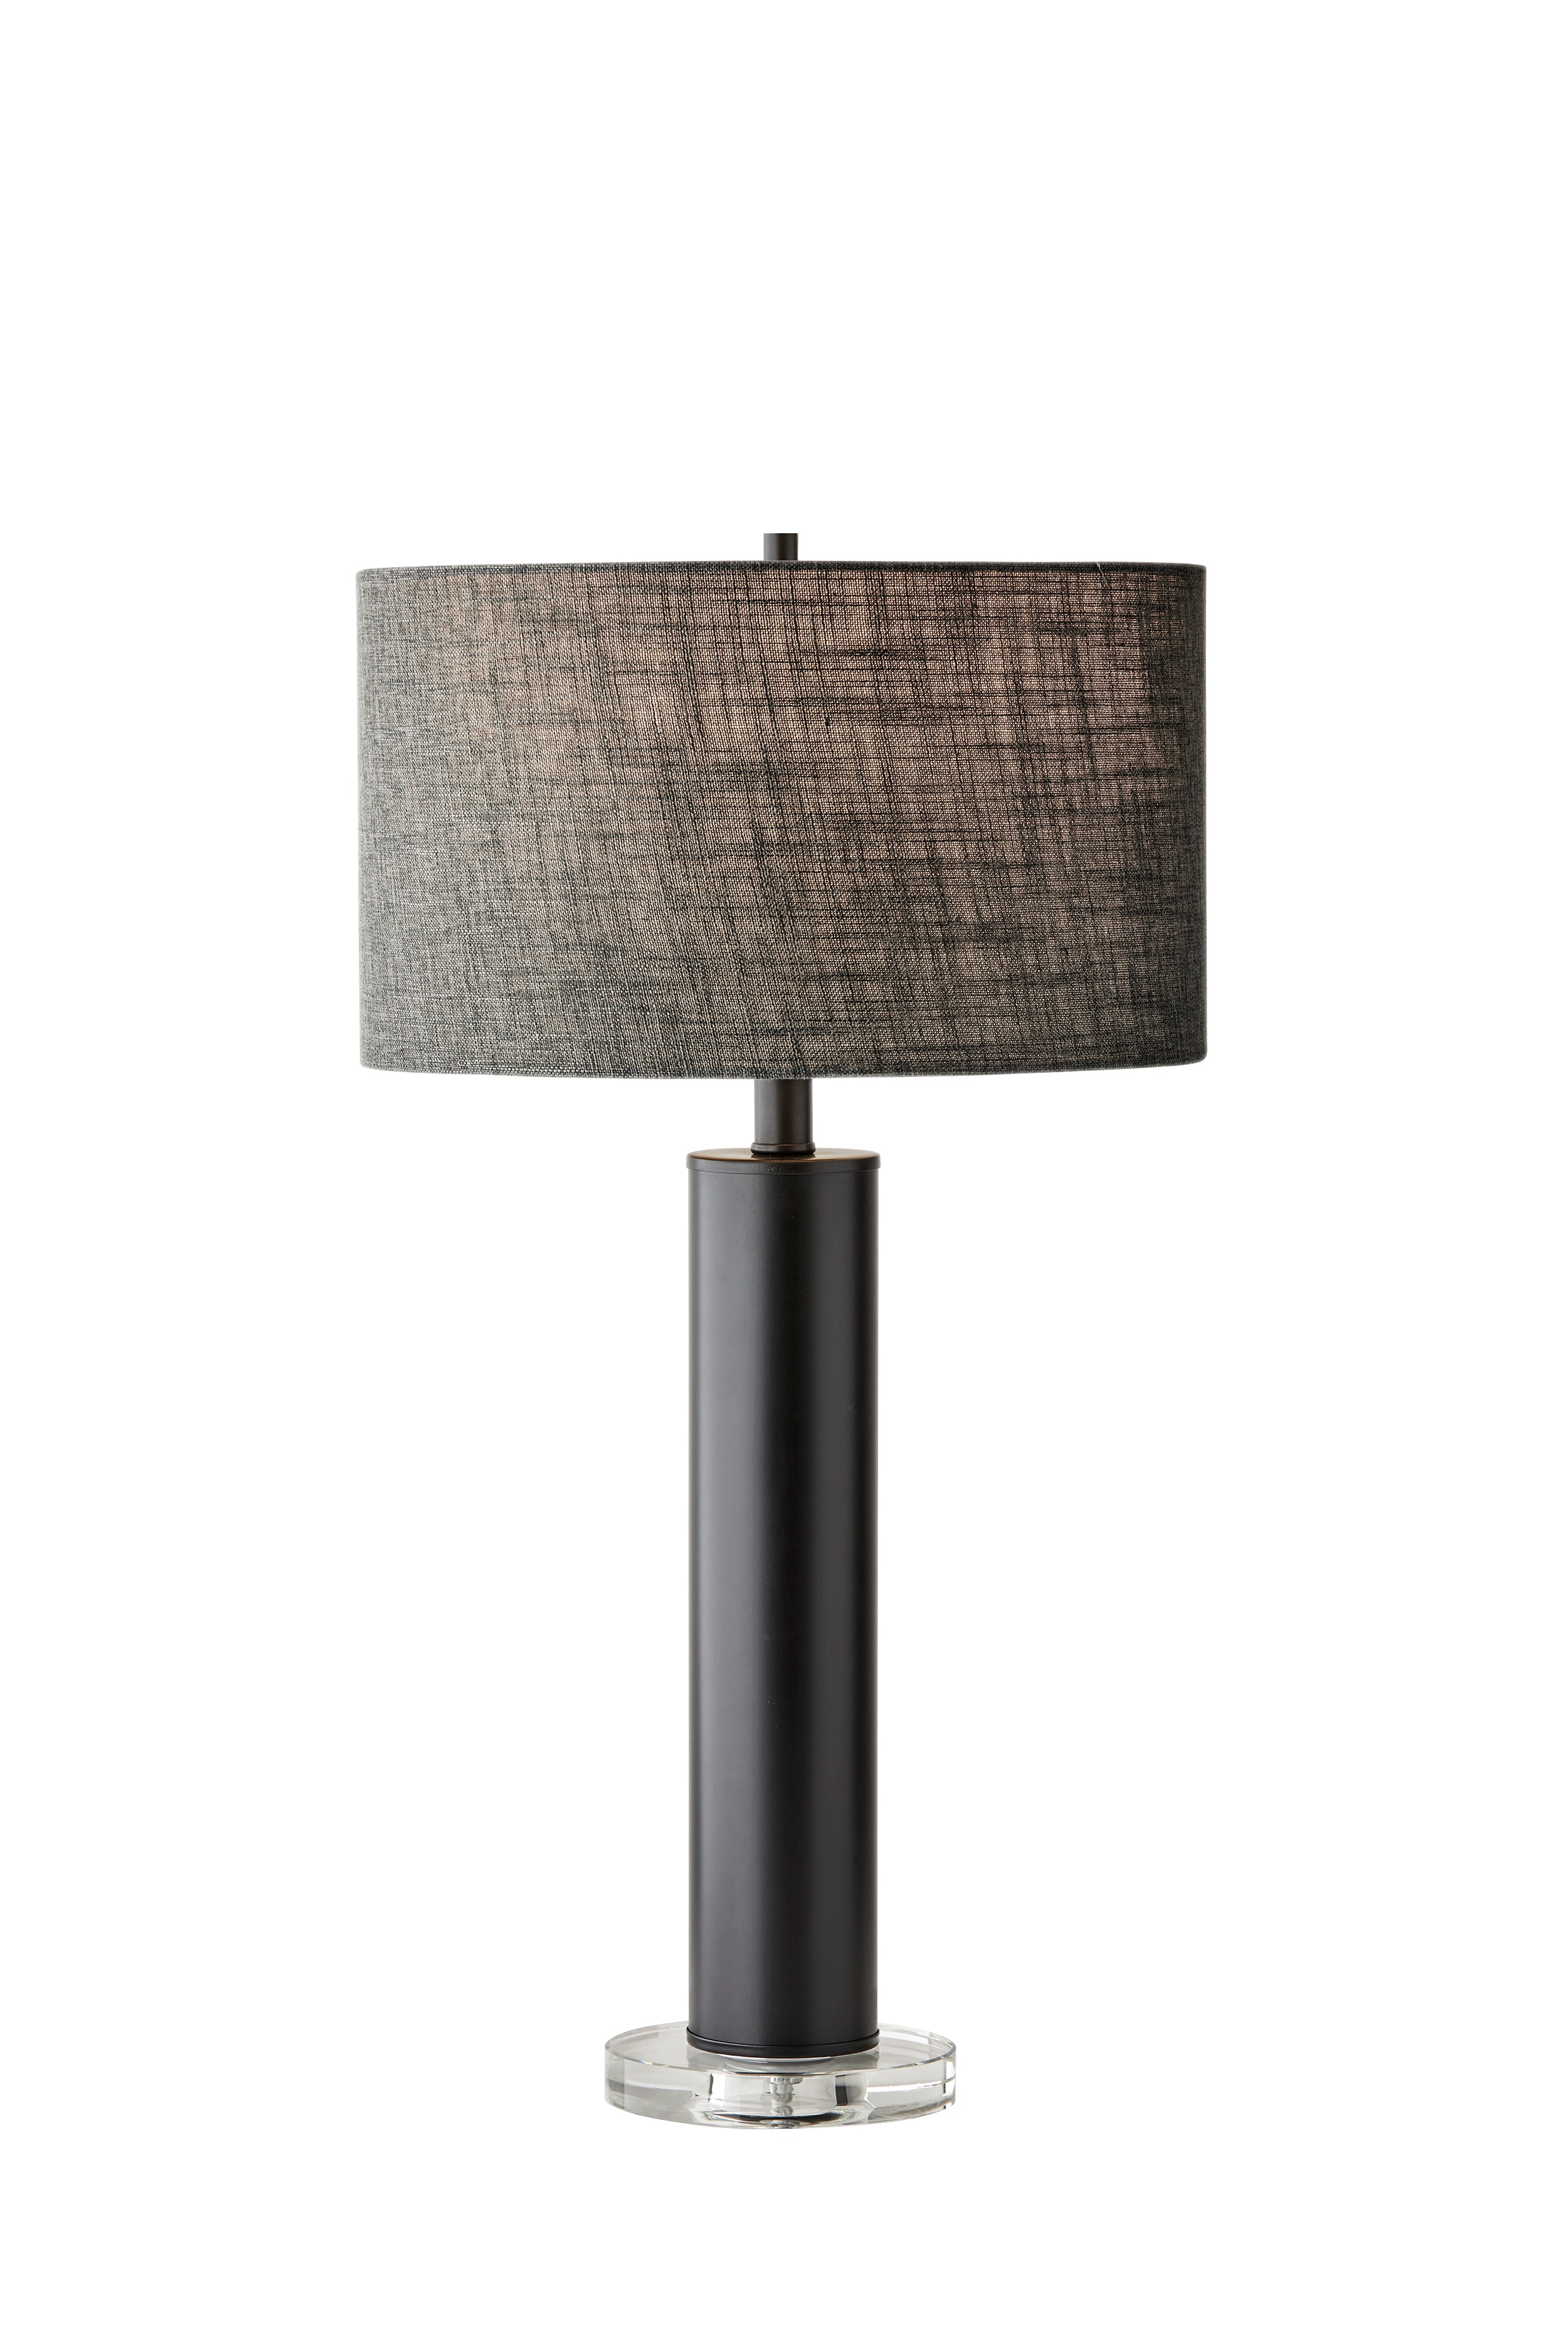 EZRA Lampe sur table Noir - 1560-01 | ADESSO